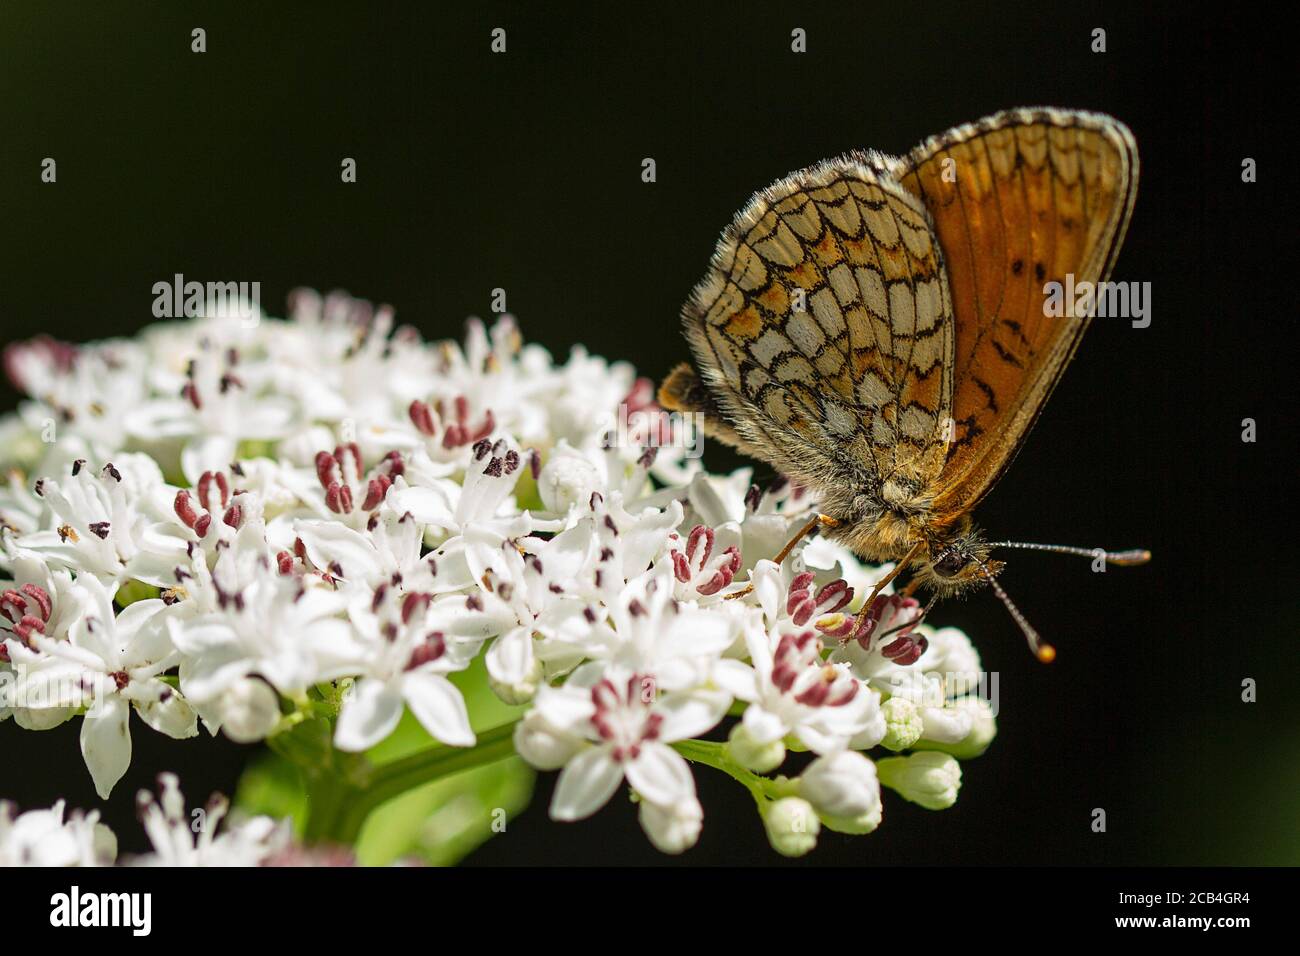 Heath Fritillary butterfly on Danewort or Dwarf Elder flower Stock Photo